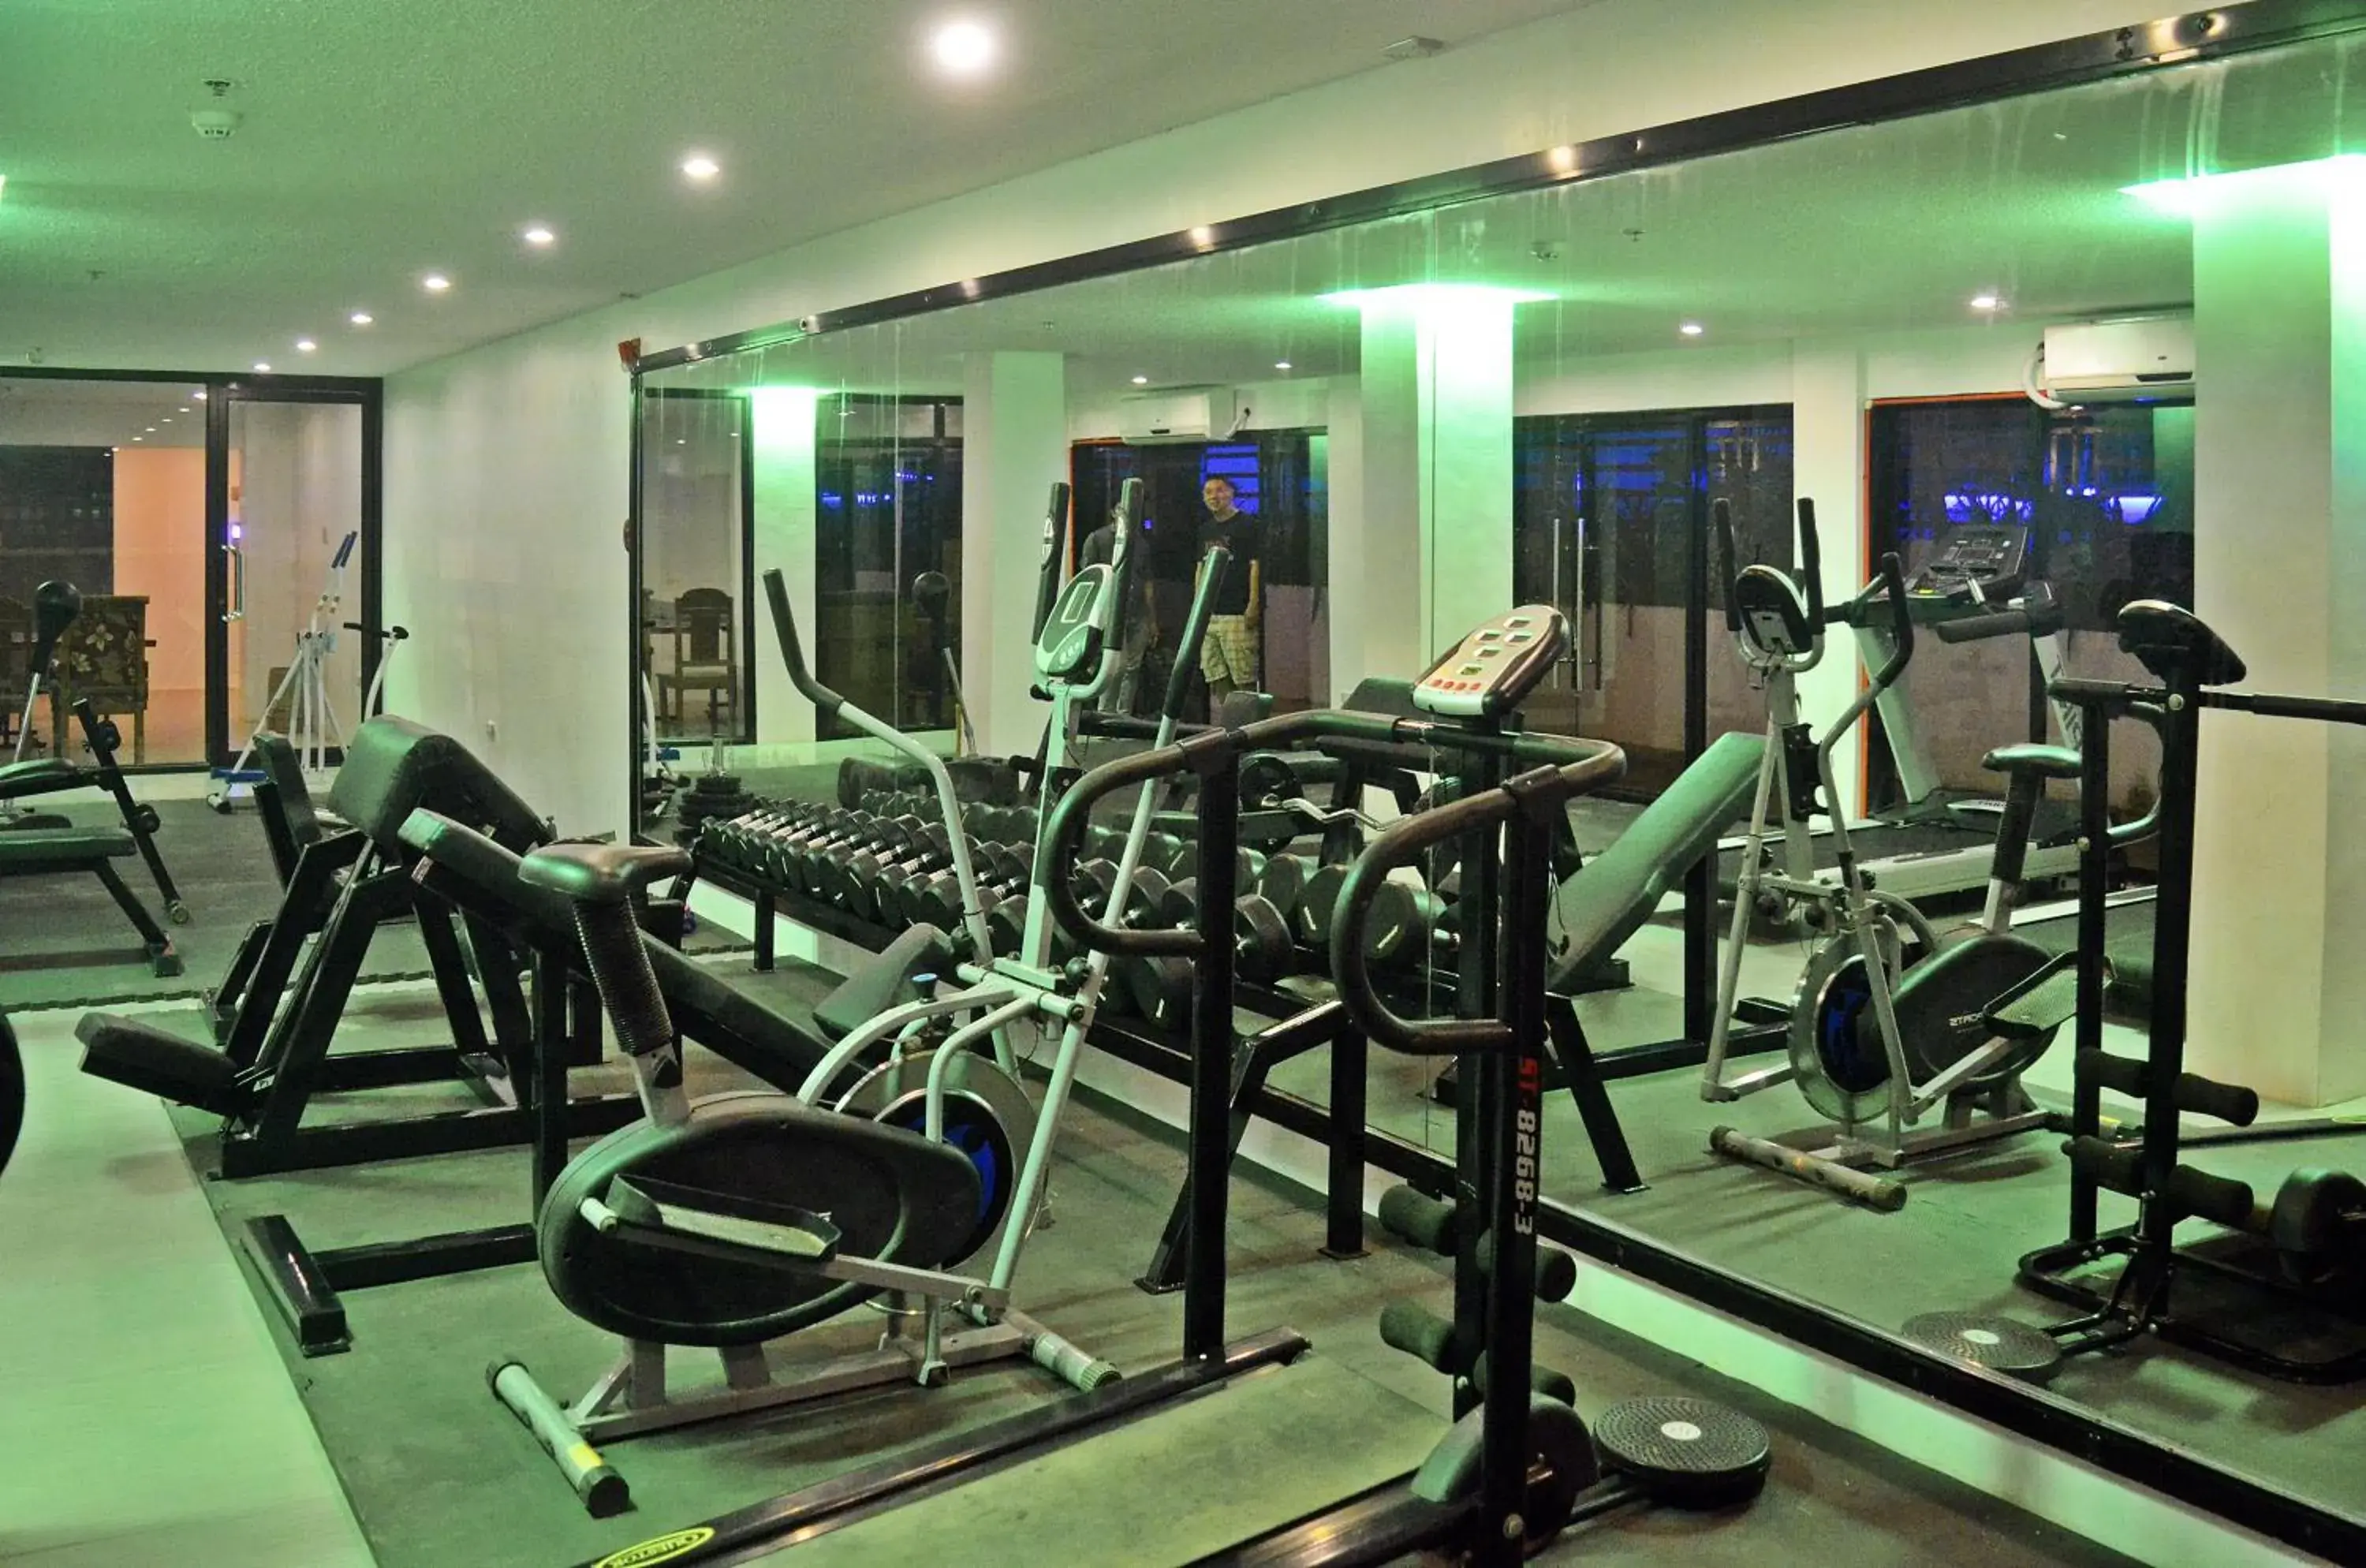 Fitness centre/facilities, Fitness Center/Facilities in Villa Israel Ecopark El Nido